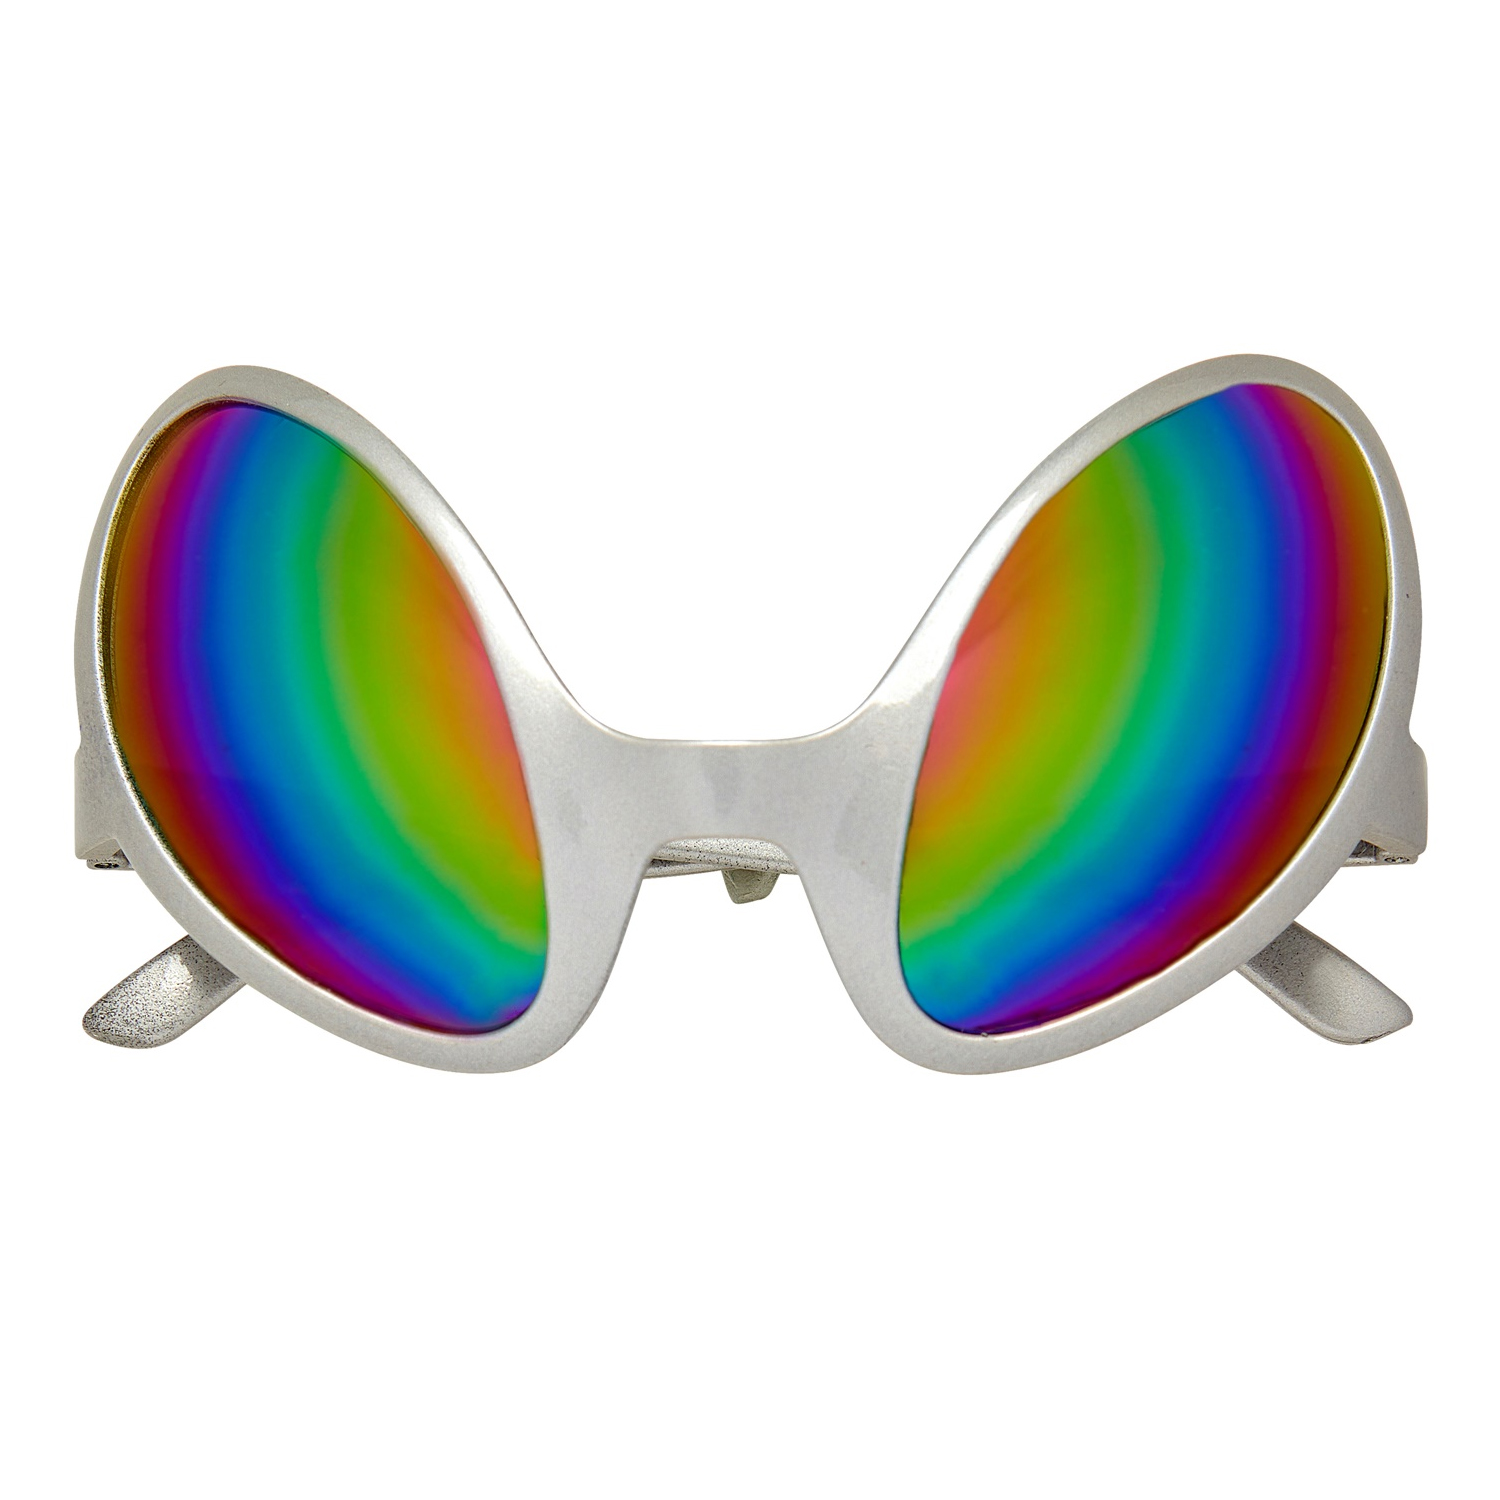 Brille Alien-Augen, mit holographischen Gläsern, silber